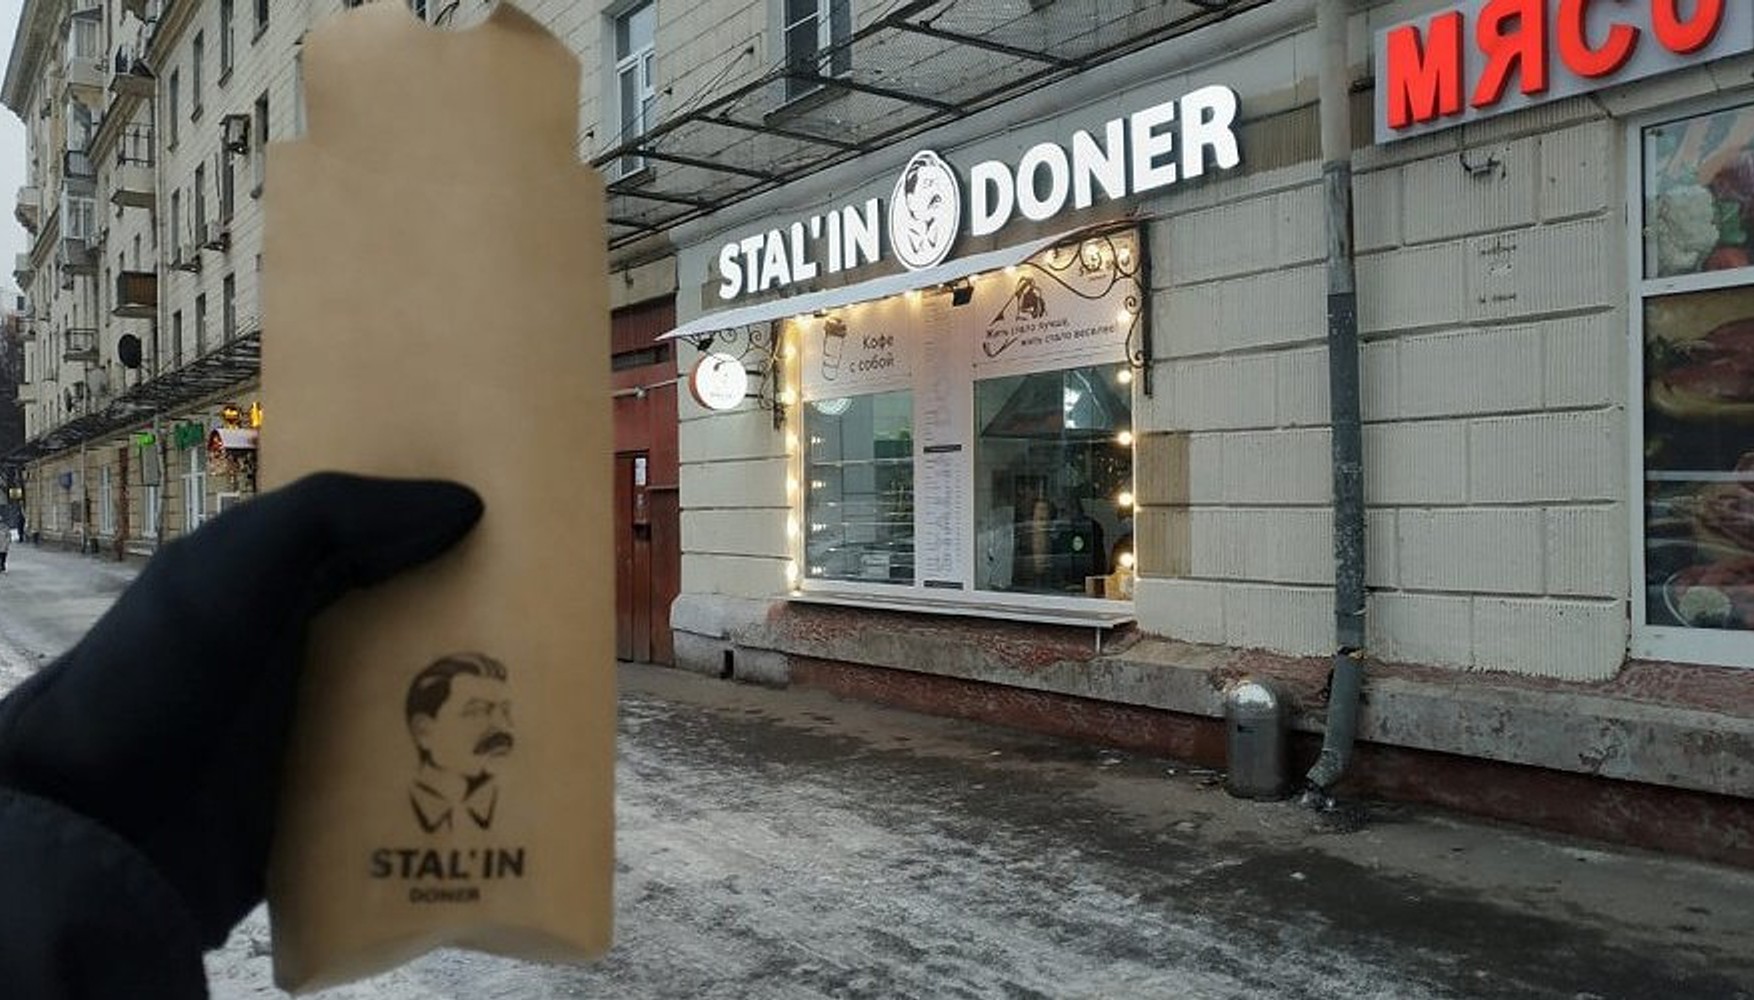 Поліція заявила, що у кафе Stal'in Doner немає дозволу на роботу